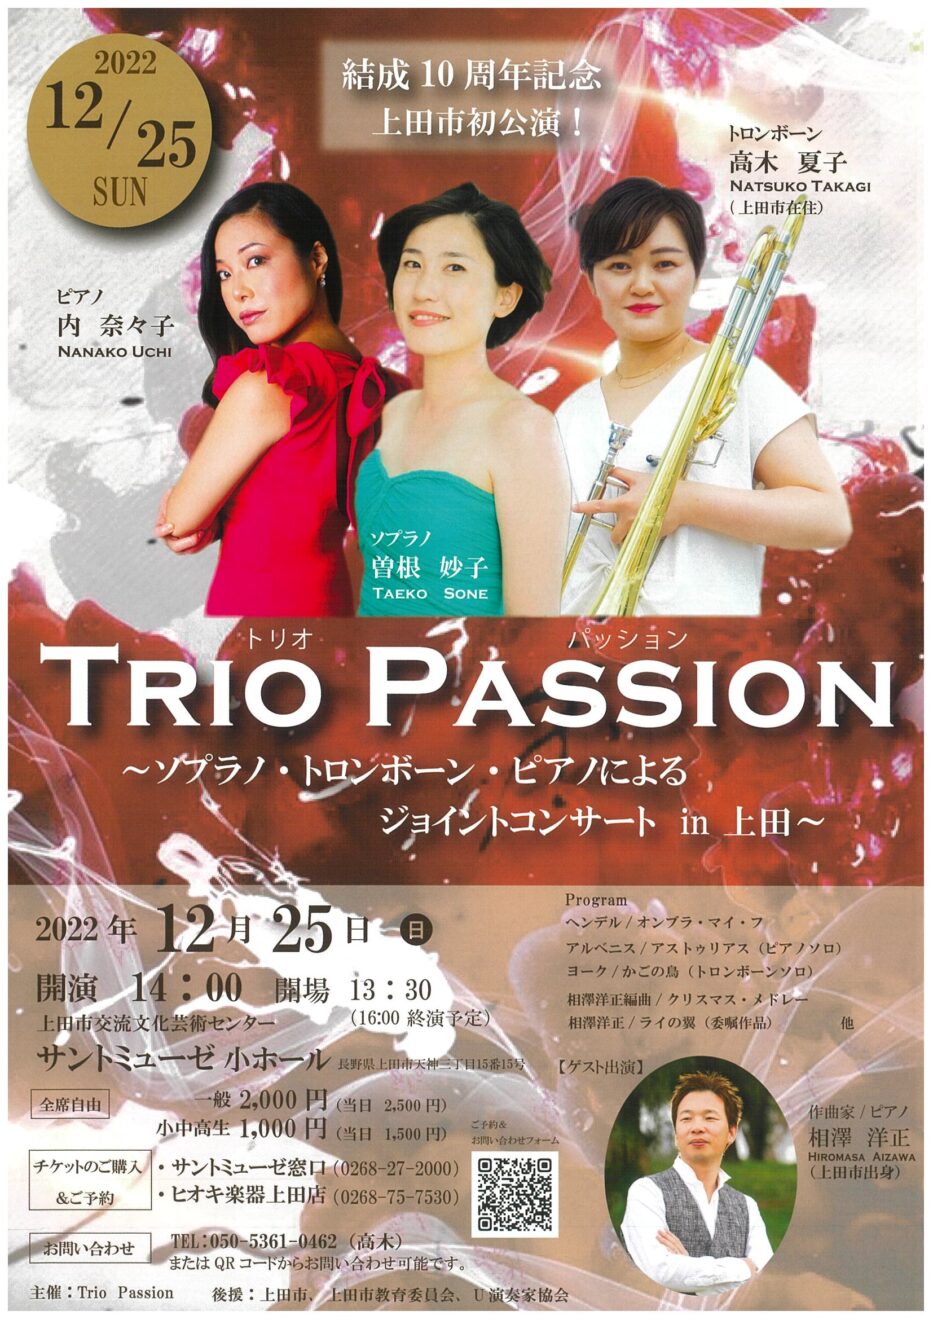 ジョイントコンサートのお知らせ | TRIO PASSION
～ソプラノ・トロンボーン・ピアノによるジョイントコンサート　in 上田 ～